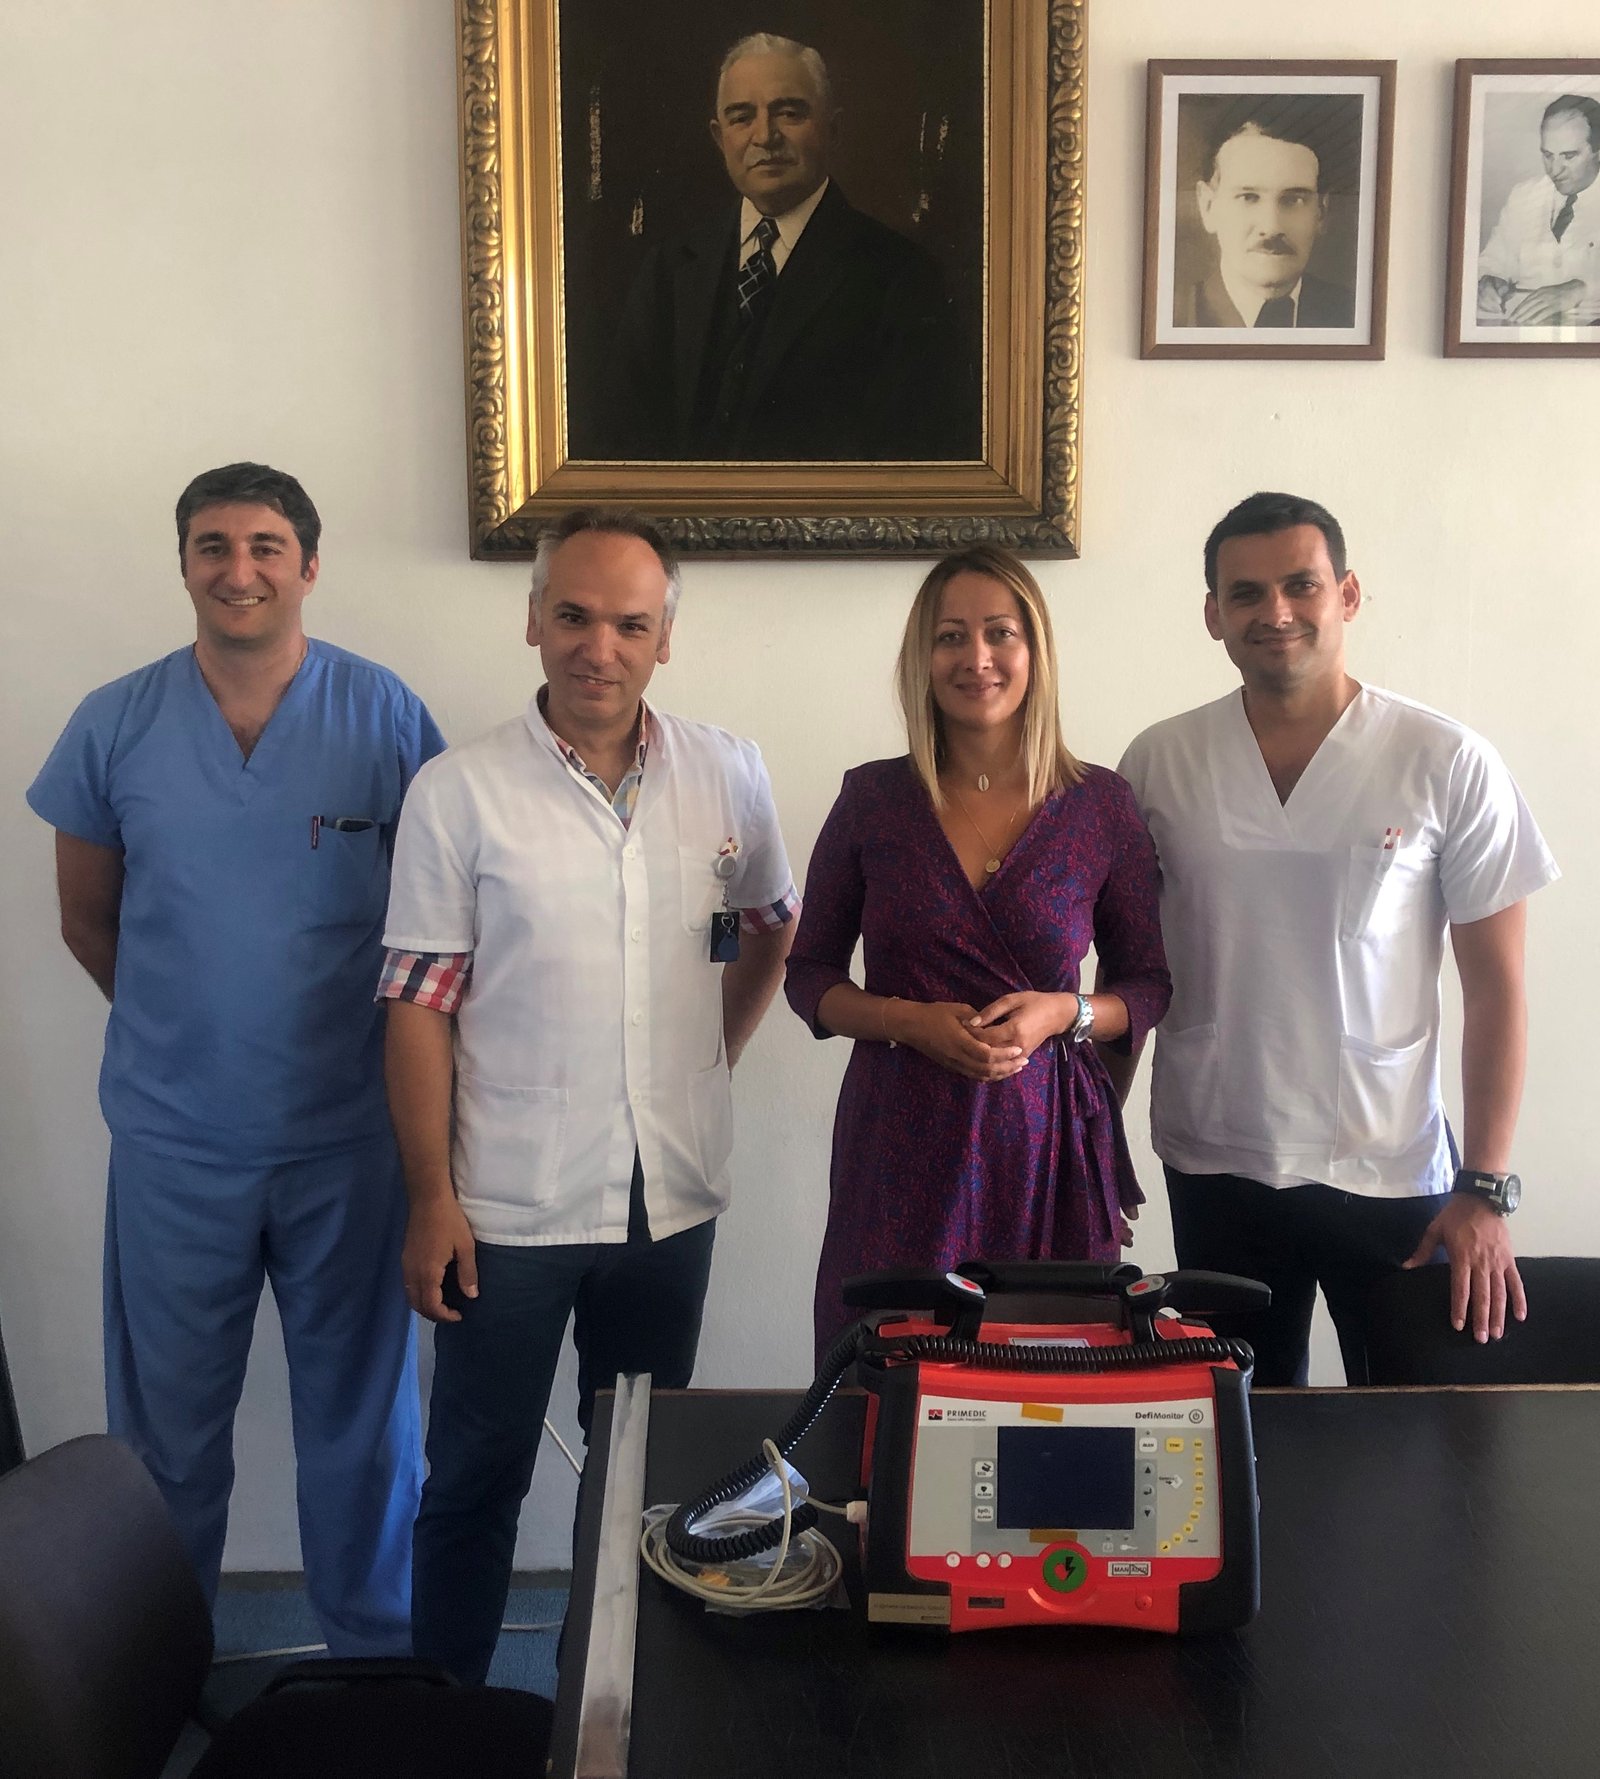 SAOPŠTENJE: HIPOTEKARNA BANKA donirala veoma vrijedan medicinski aparat - DEFIBRILATOR - Specijalnoj bolnici „Vaso Ćuković“ Risan